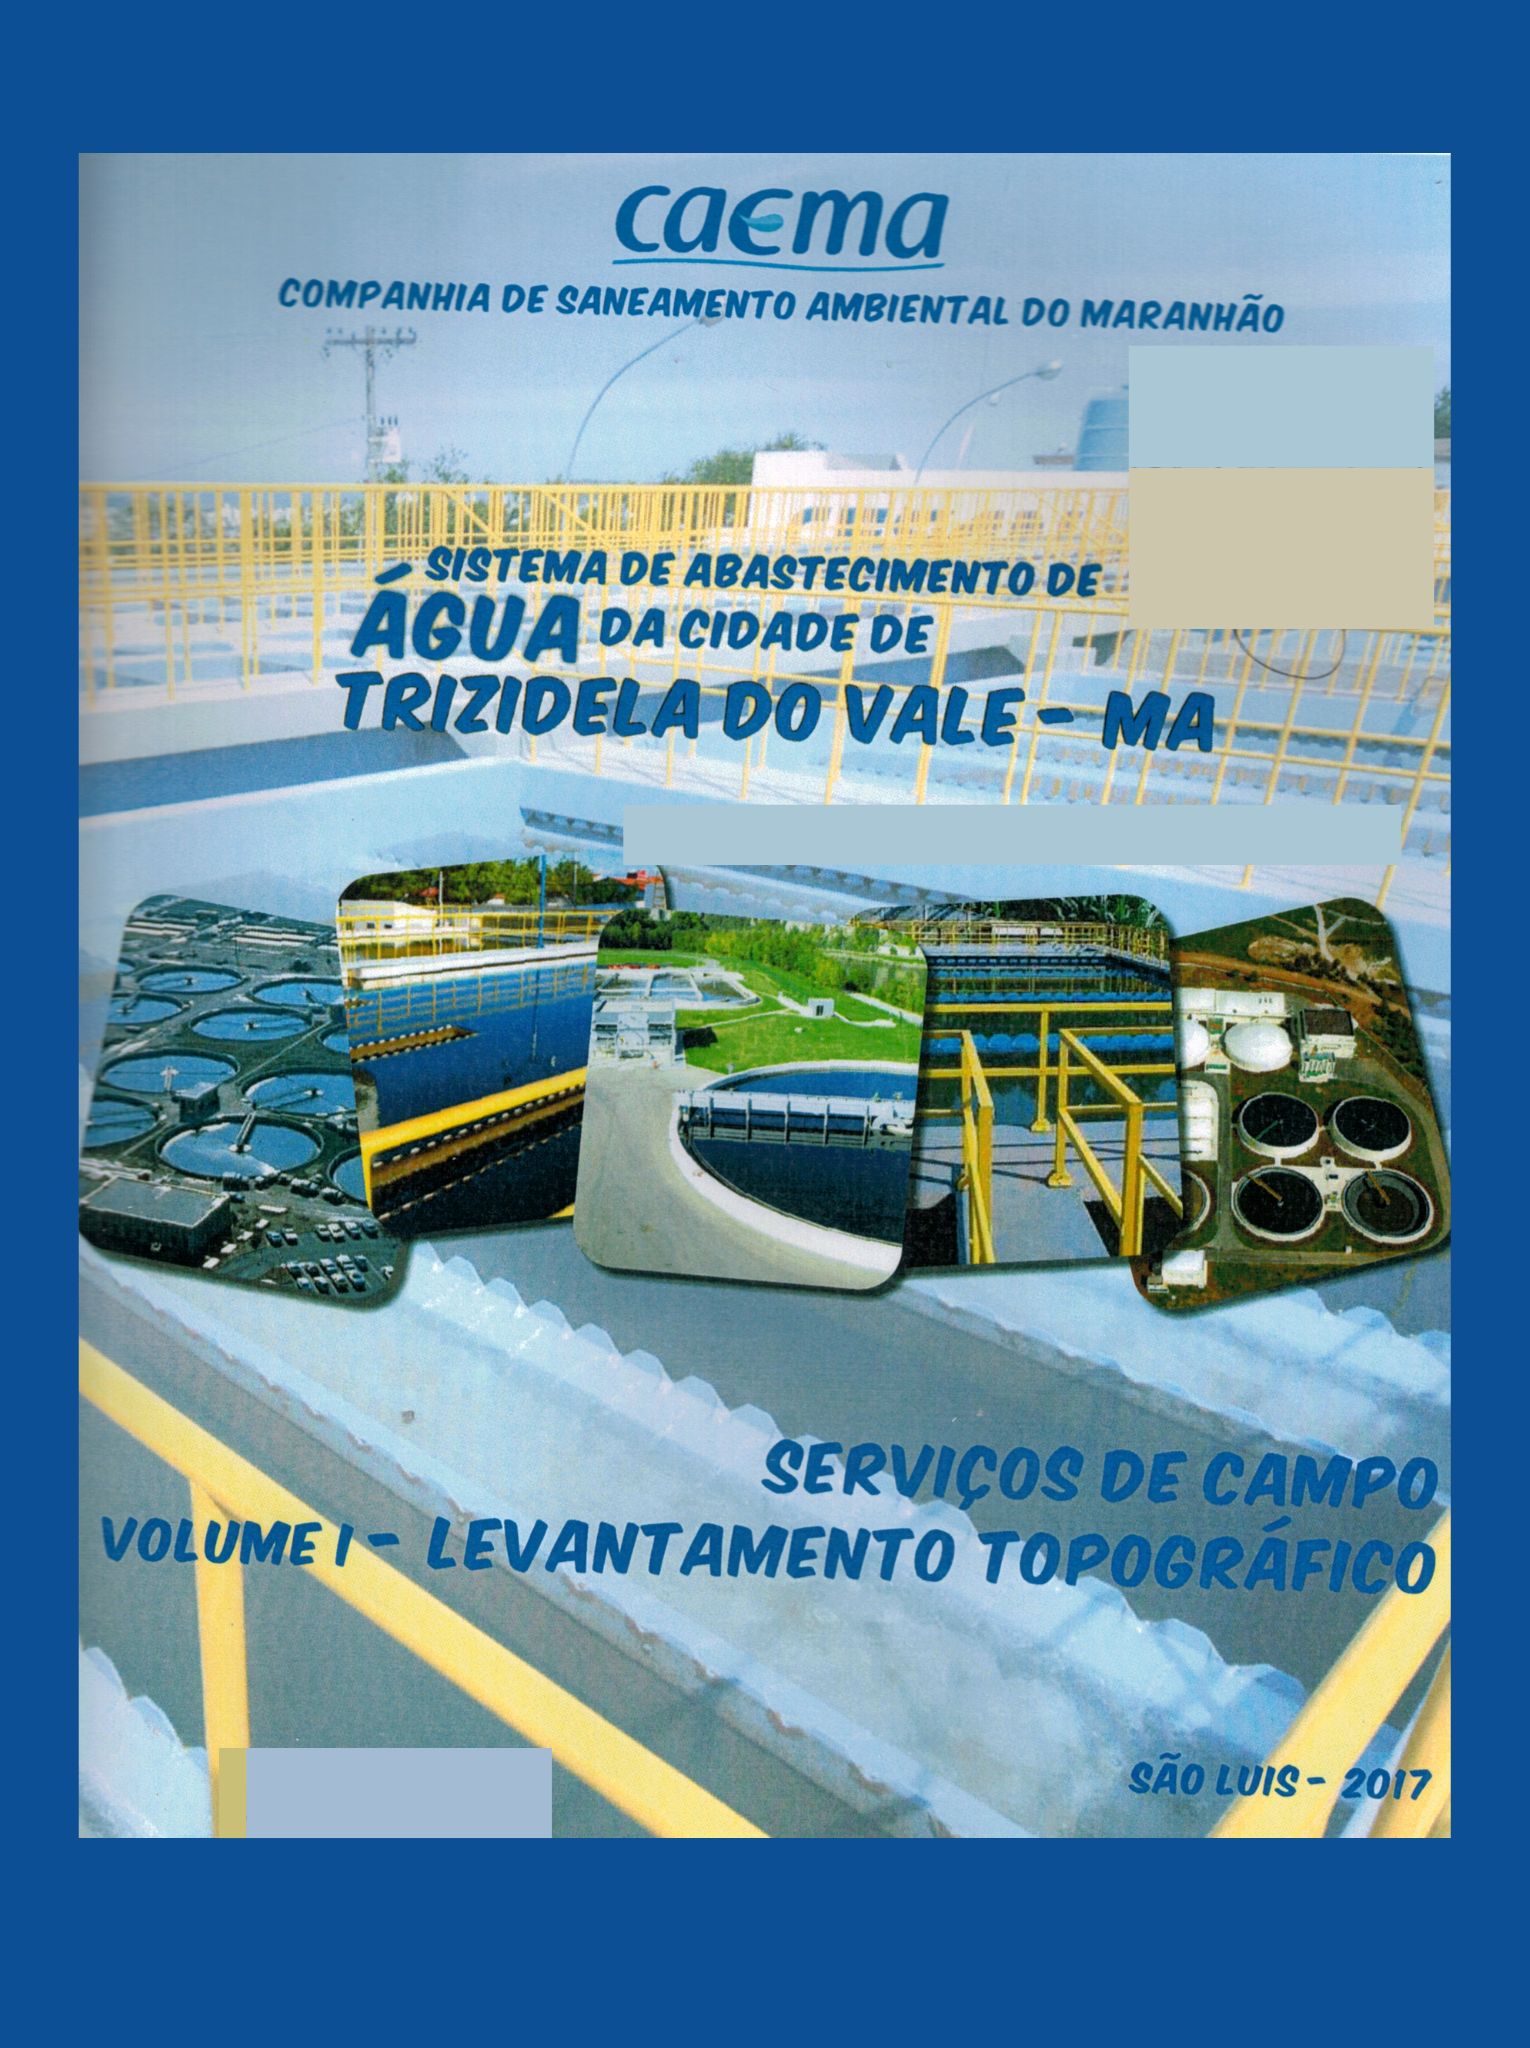 Imagem da capa do Projeto técnico com informações de titulo e autoria.